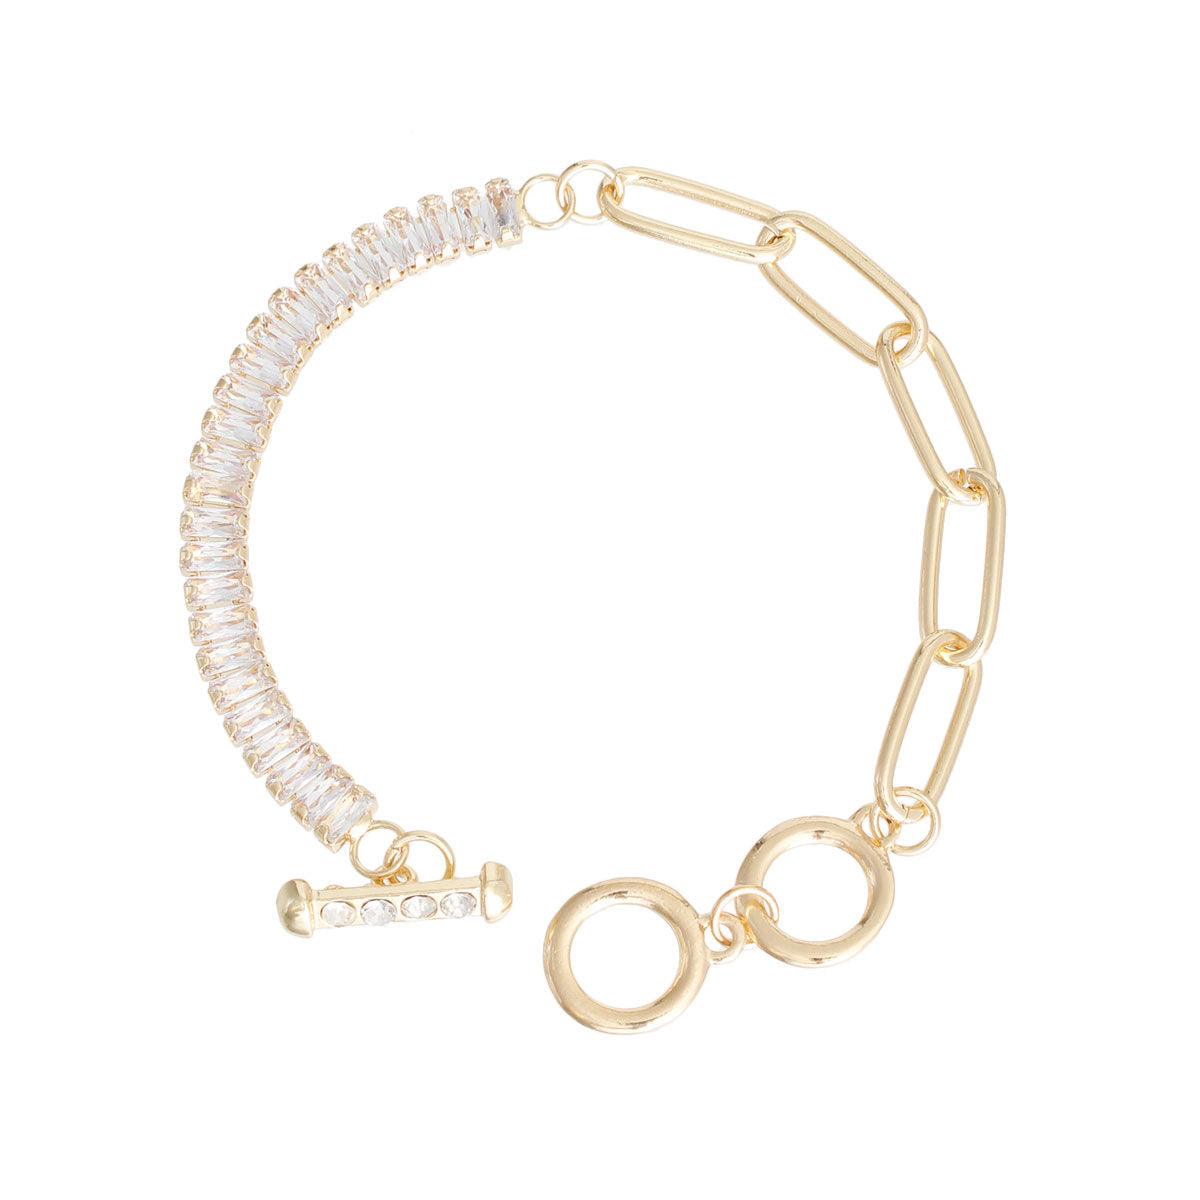 Gold-tone Women's Cubic Zirconia Link Bracelet: Sparkle & Shine